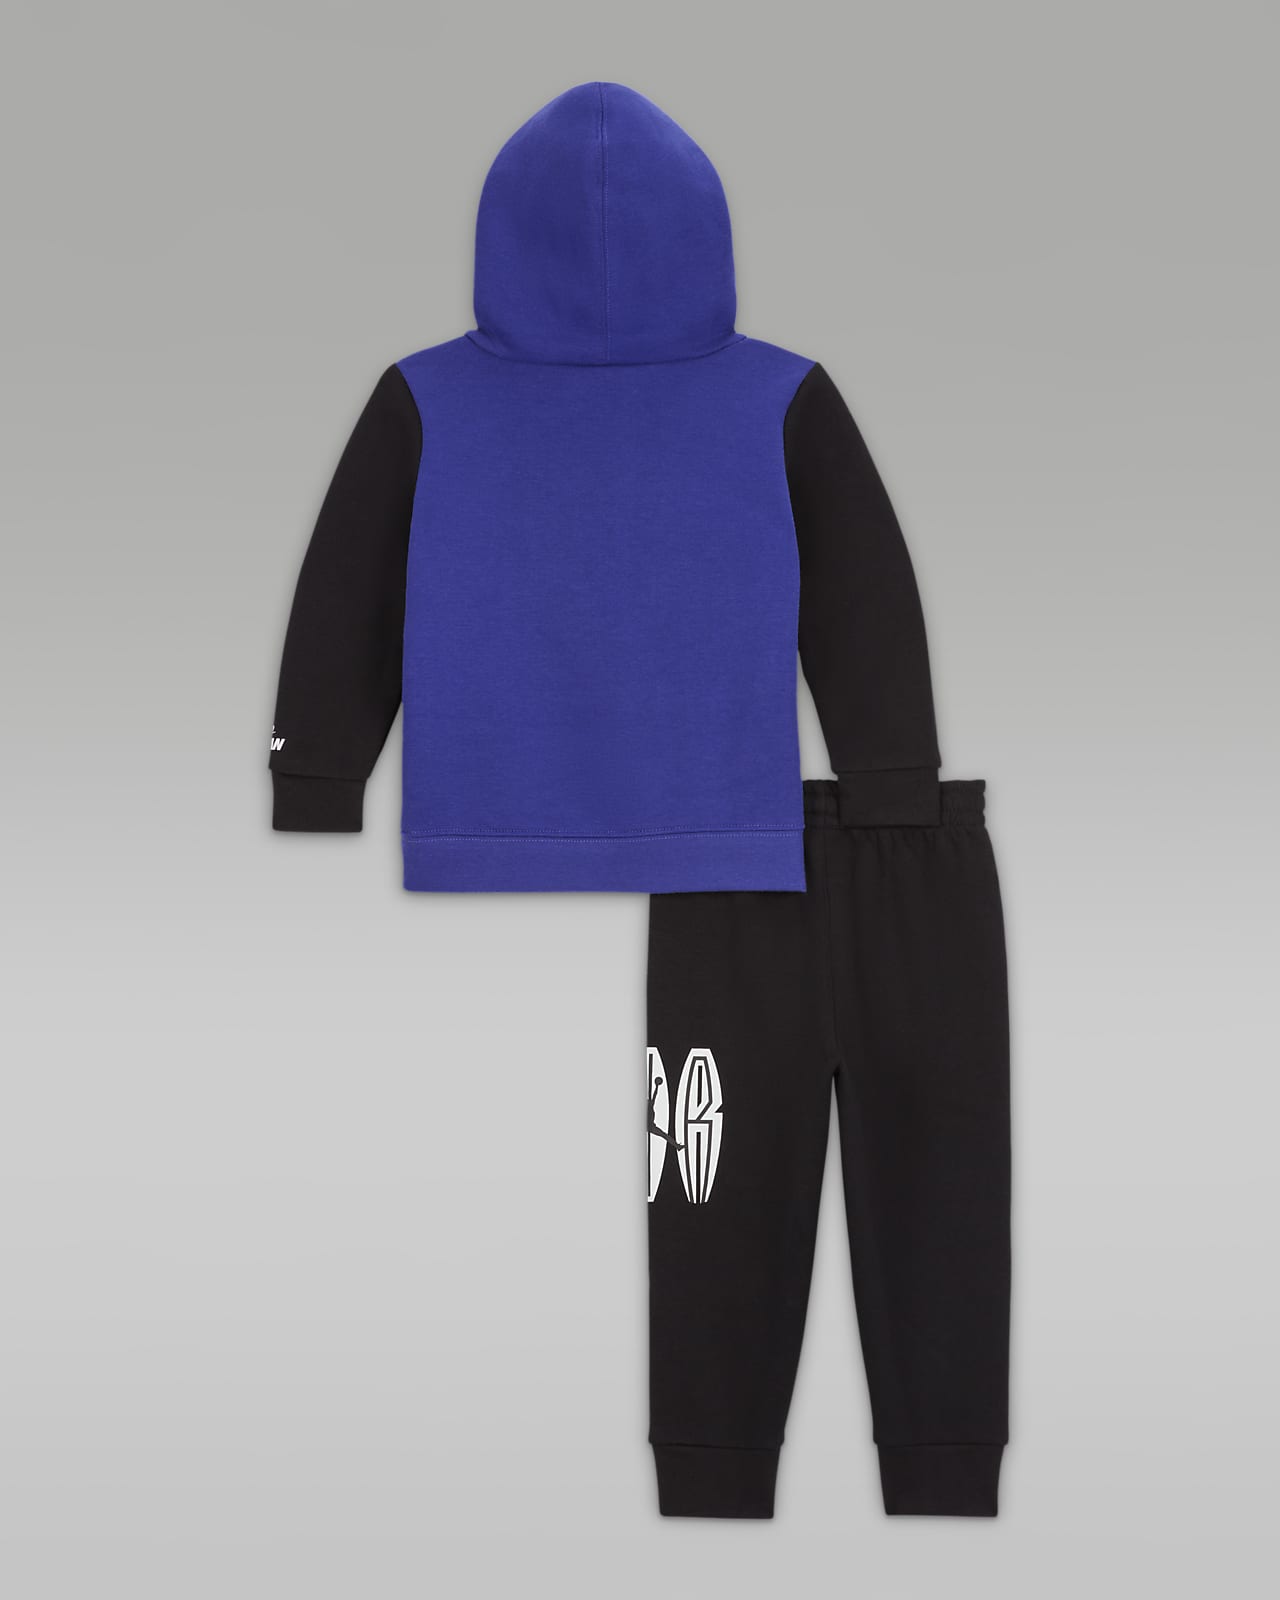 Jordan Essentials Fleece Set (Infant), Carbon Heather, 12 : :  Clothing, Shoes & Accessories